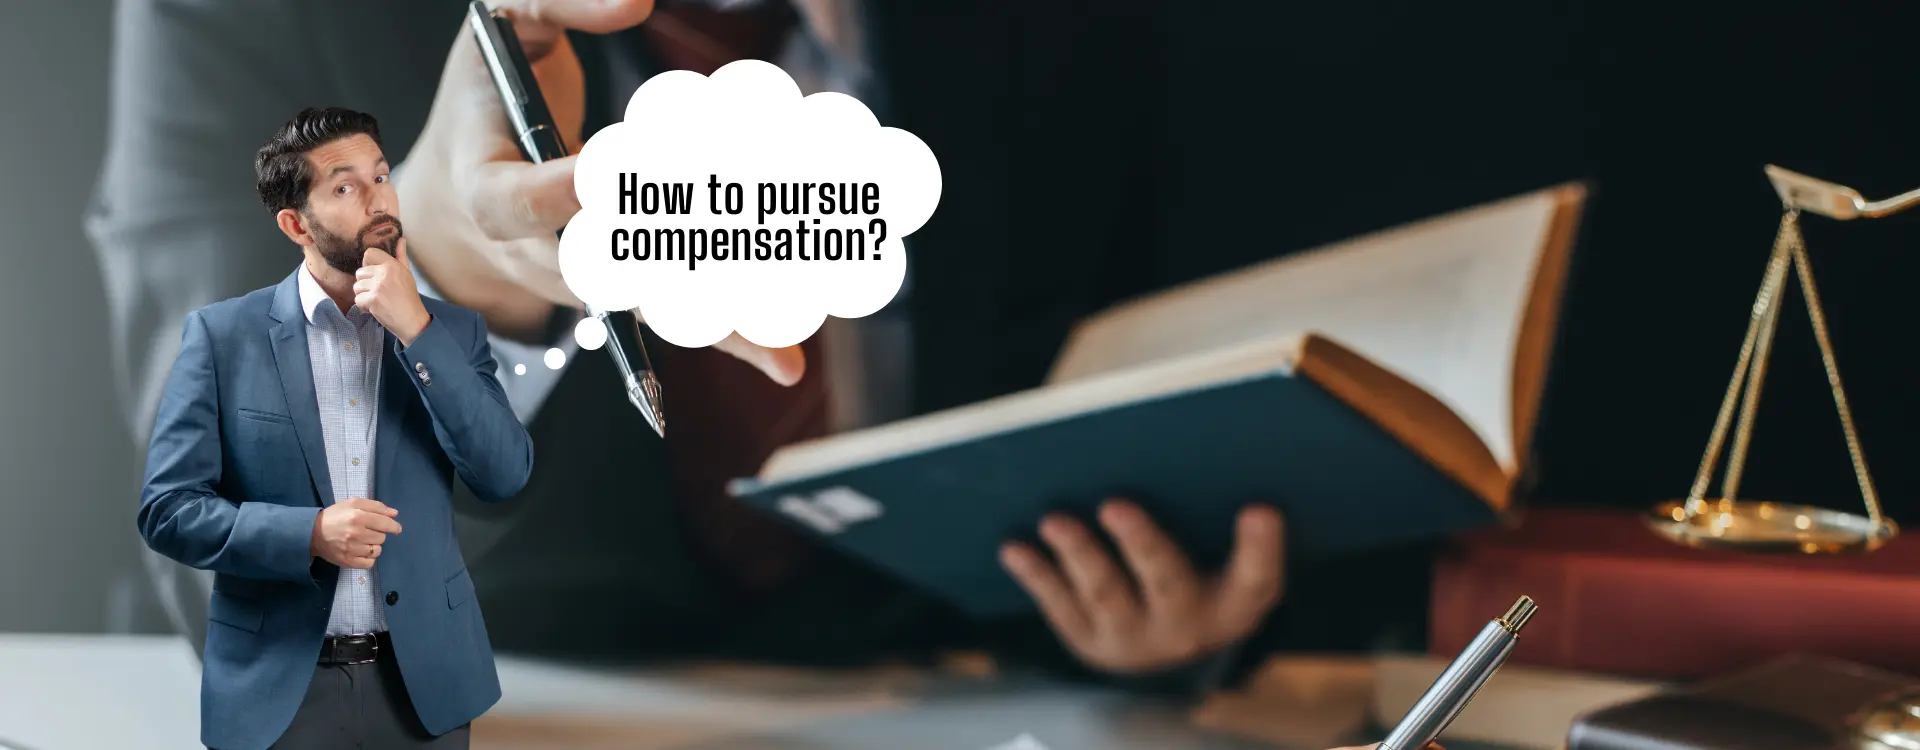 legal steps to pursue compensation